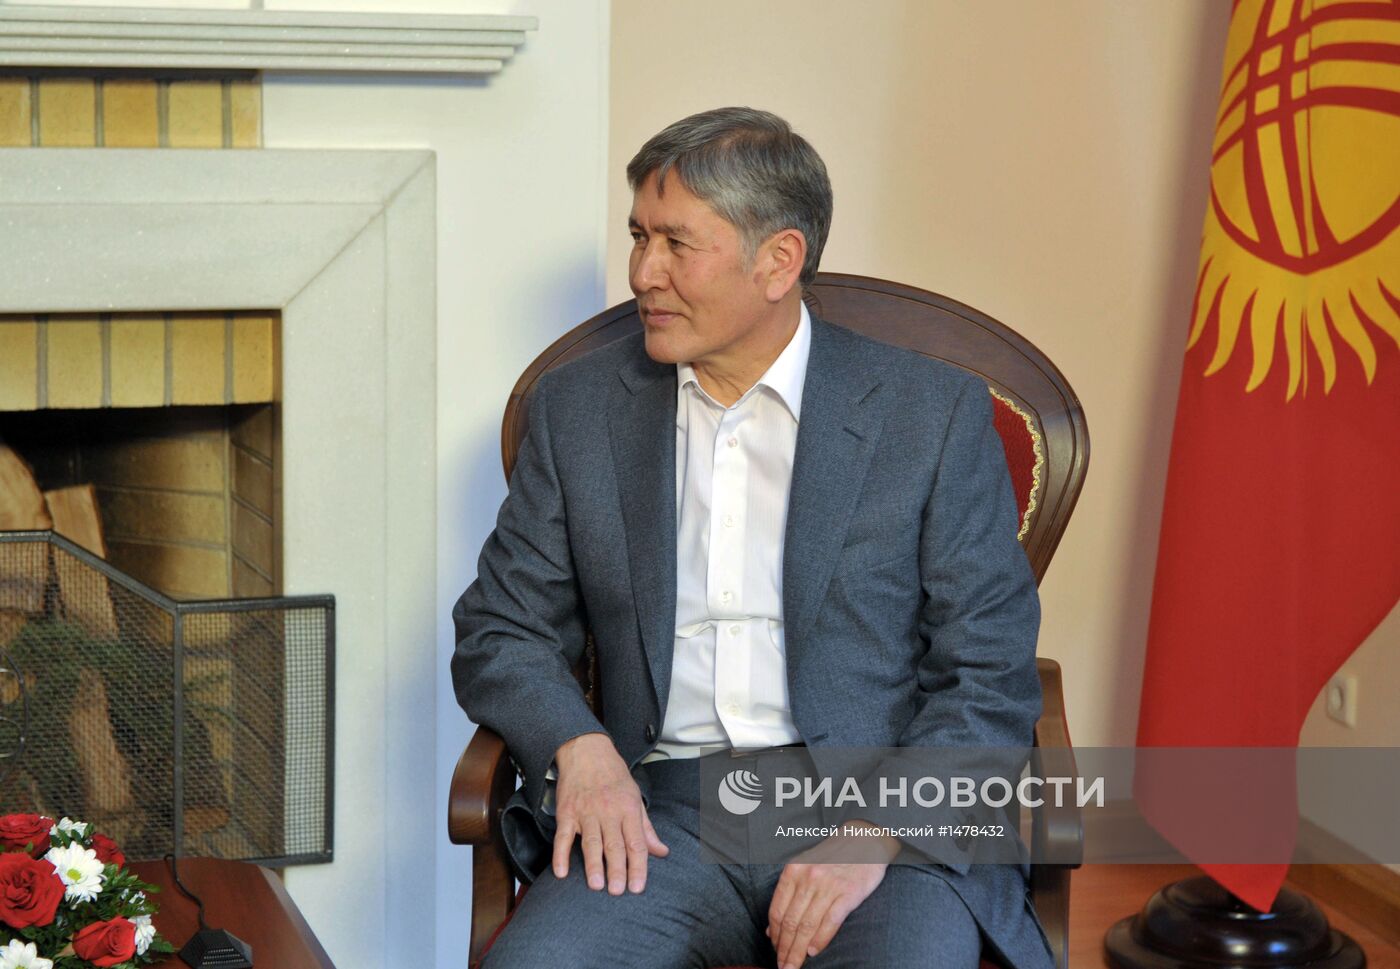 Рабочая поездка В.Путина в Киргизию